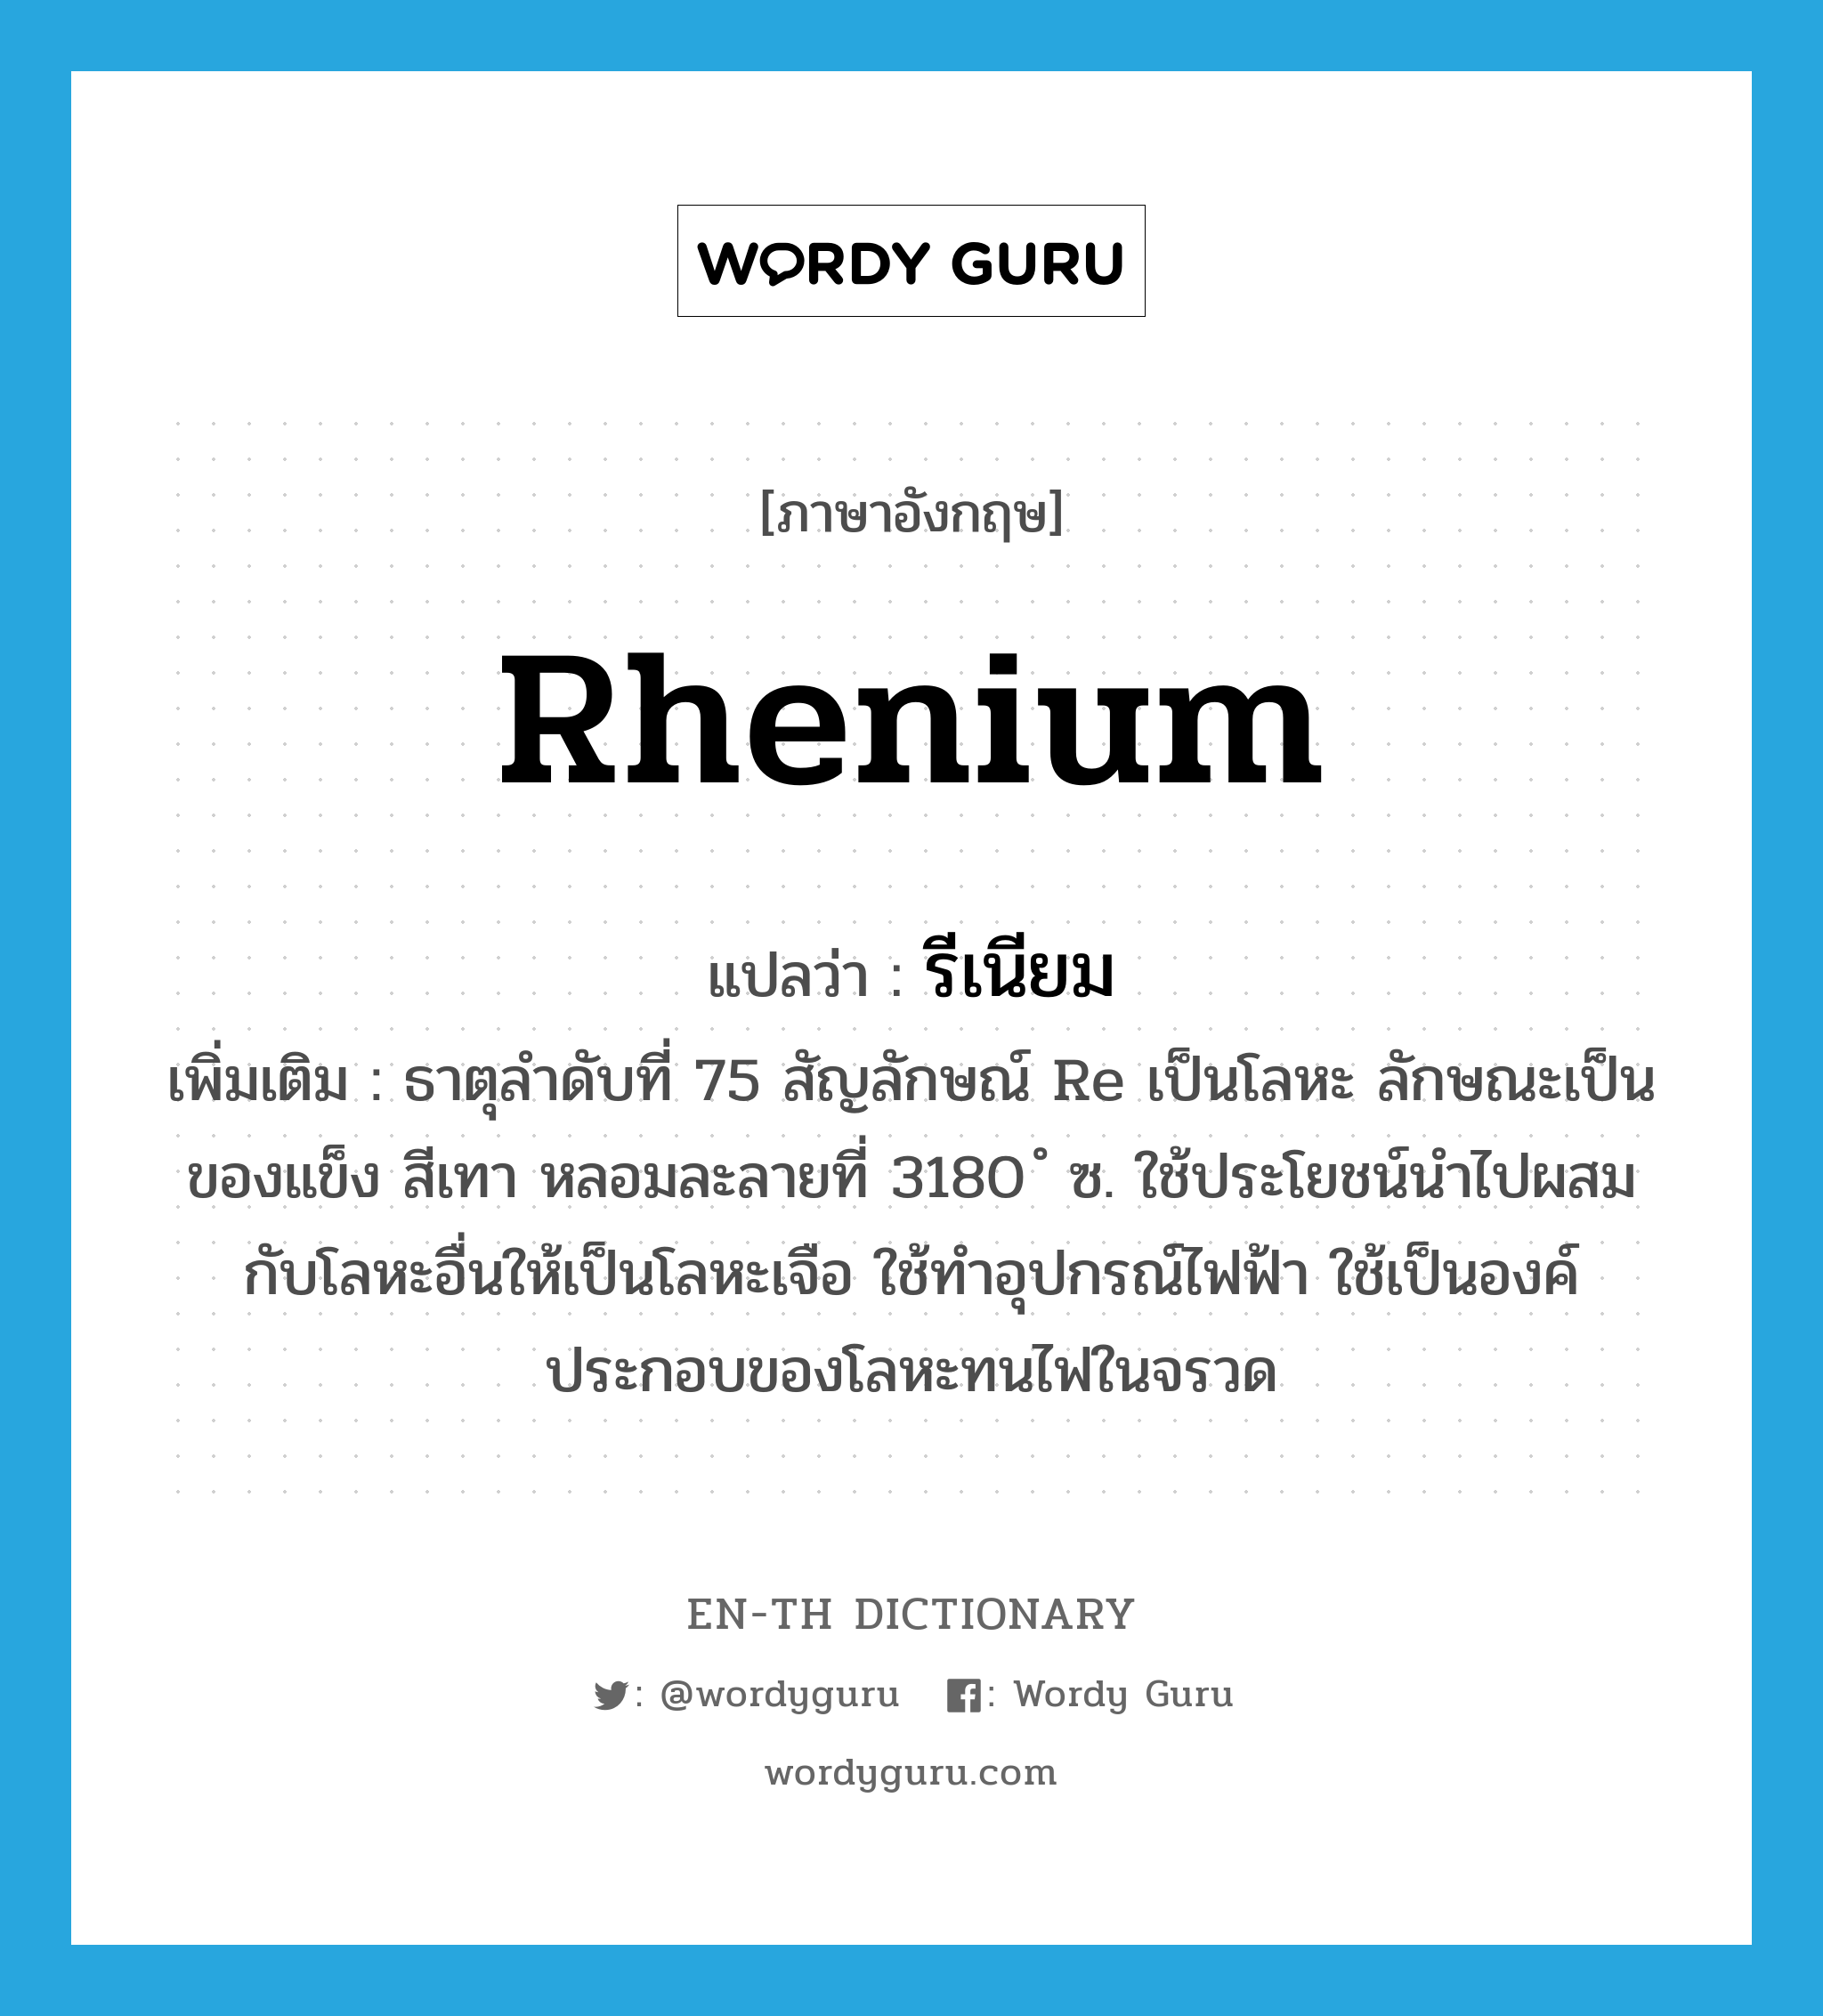 รีเนียม ภาษาอังกฤษ?, คำศัพท์ภาษาอังกฤษ รีเนียม แปลว่า rhenium ประเภท N เพิ่มเติม ธาตุลำดับที่ 75 สัญลักษณ์ Re เป็นโลหะ ลักษณะเป็นของแข็ง สีเทา หลอมละลายที่ 3180 ํ ซ. ใช้ประโยชน์นำไปผสมกับโลหะอื่นให้เป็นโลหะเจือ ใช้ทำอุปกรณ์ไฟฟ้า ใช้เป็นองค์ประกอบของโลหะทนไฟในจรวด หมวด N